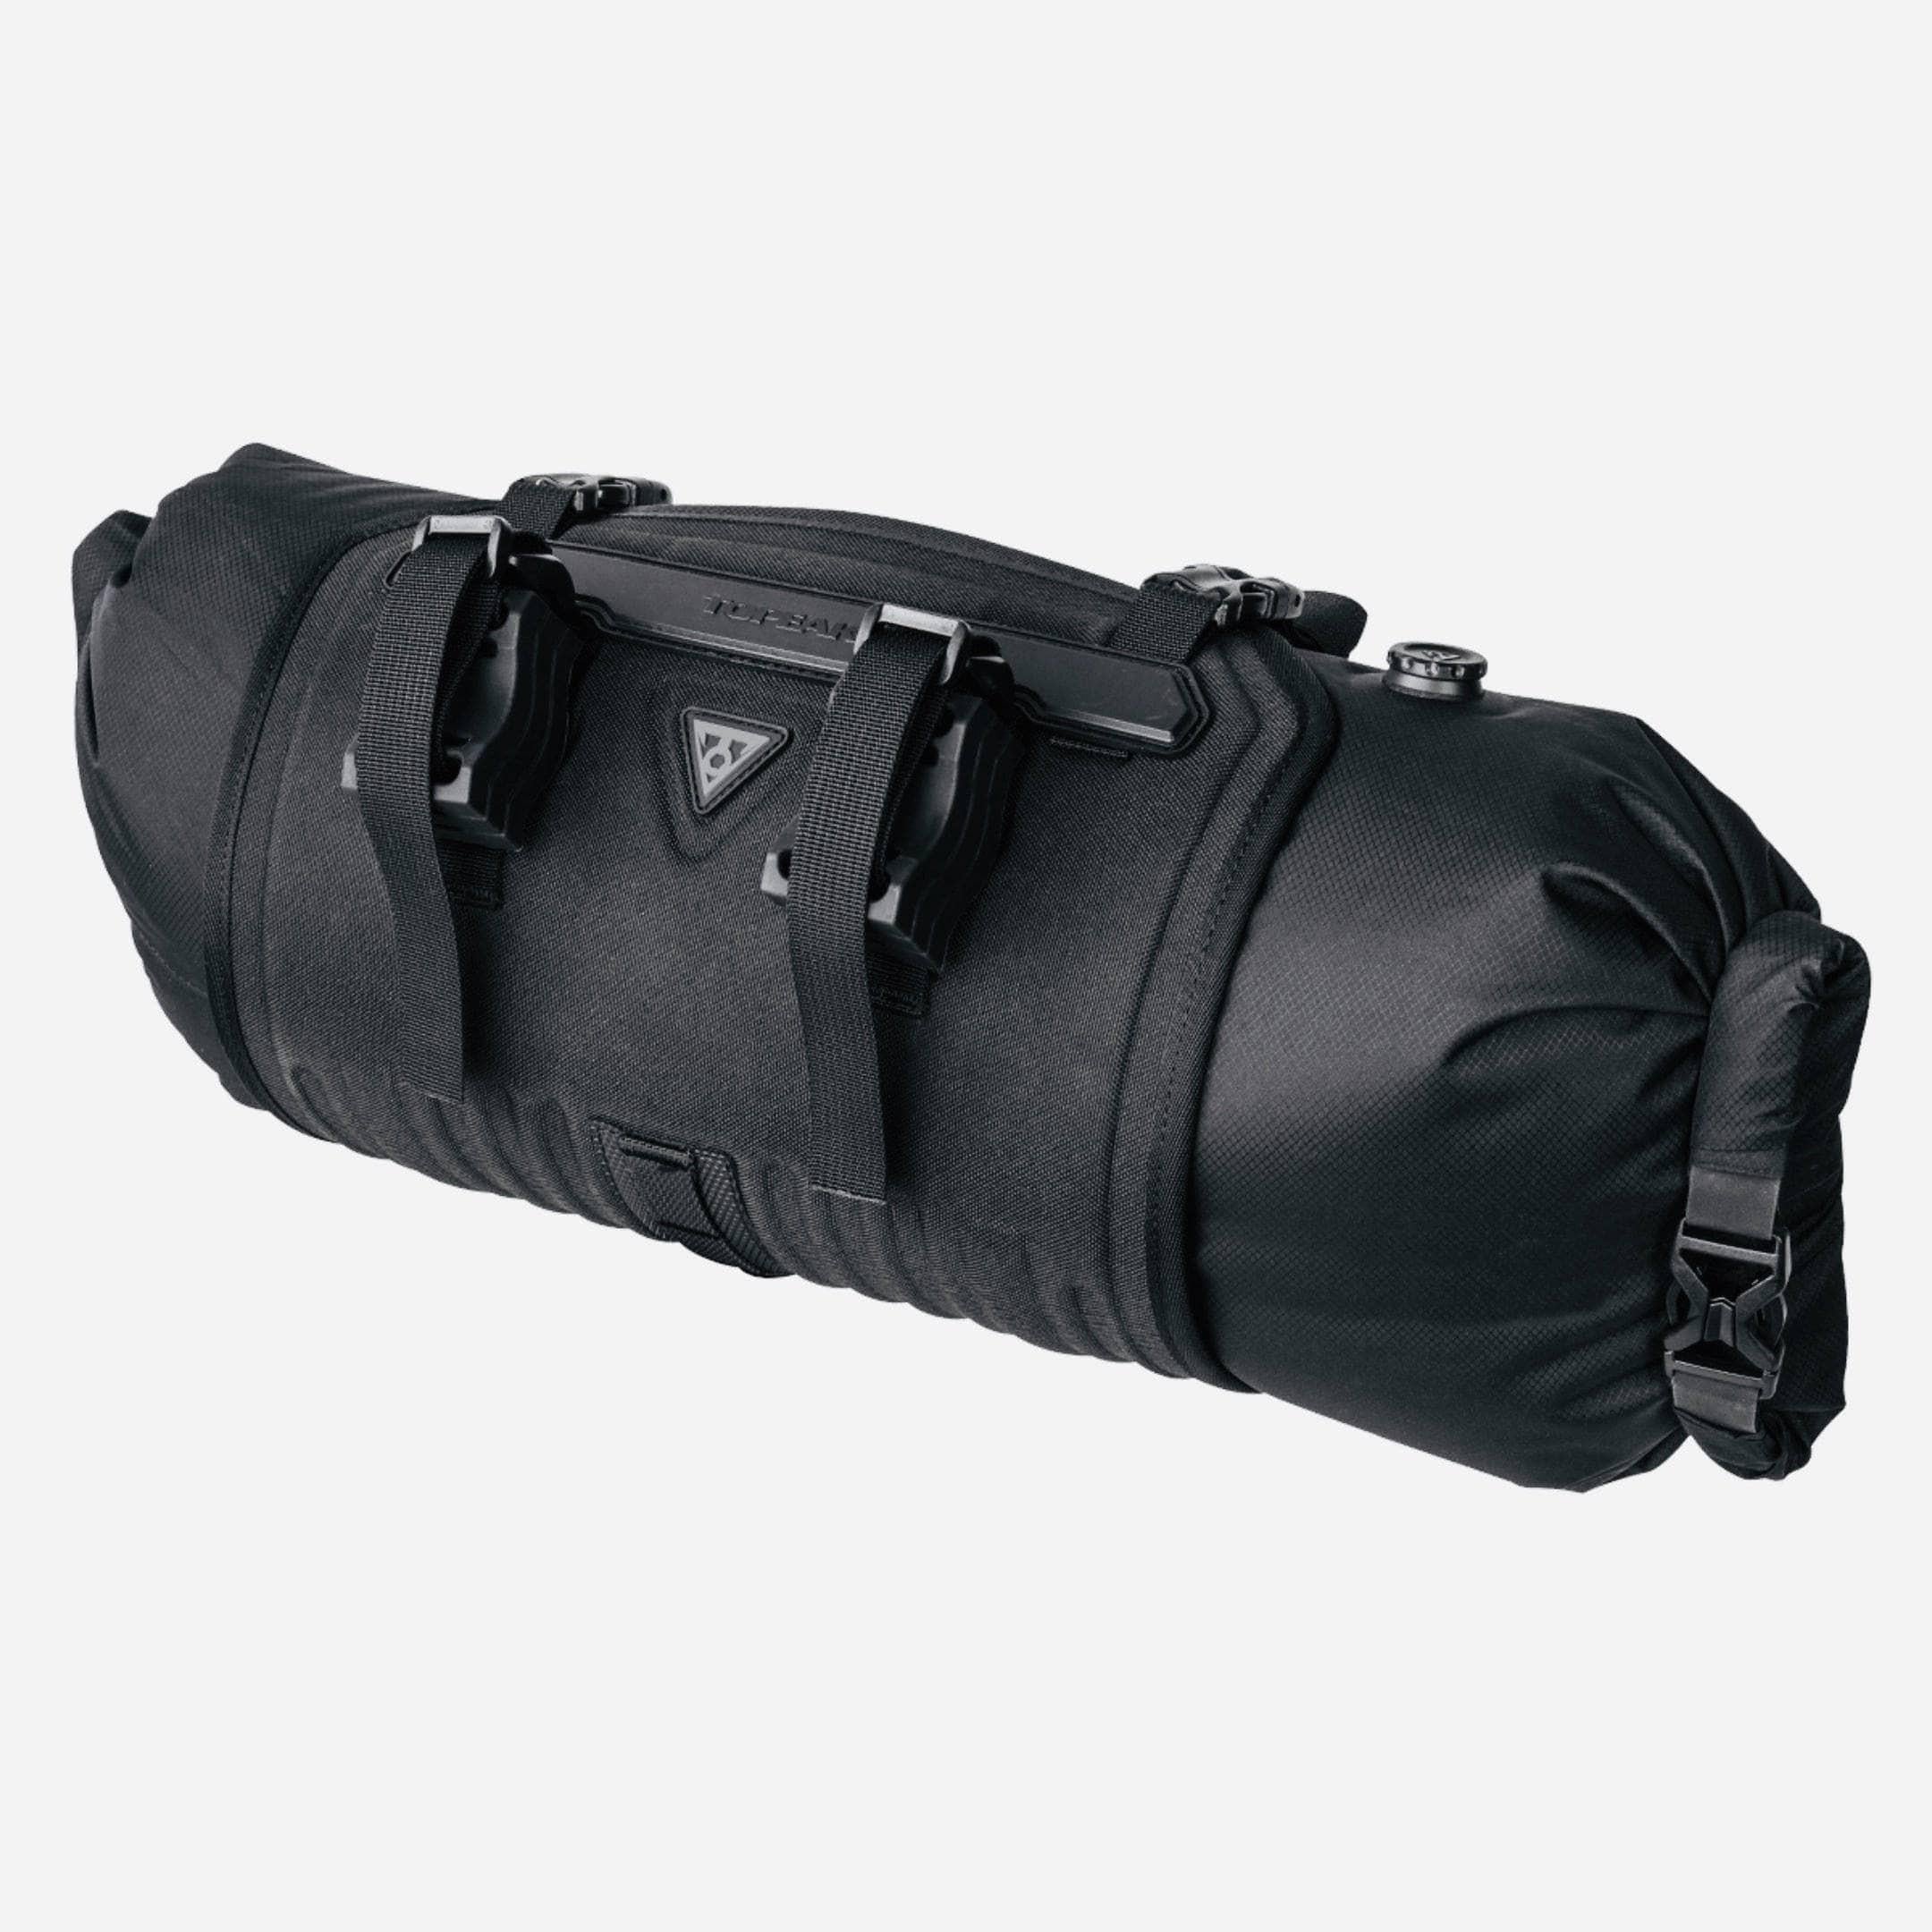 Topeak FrontLoader Handlebar Mount Bag 8L Black Accessories - Bags - Handlebar Bags